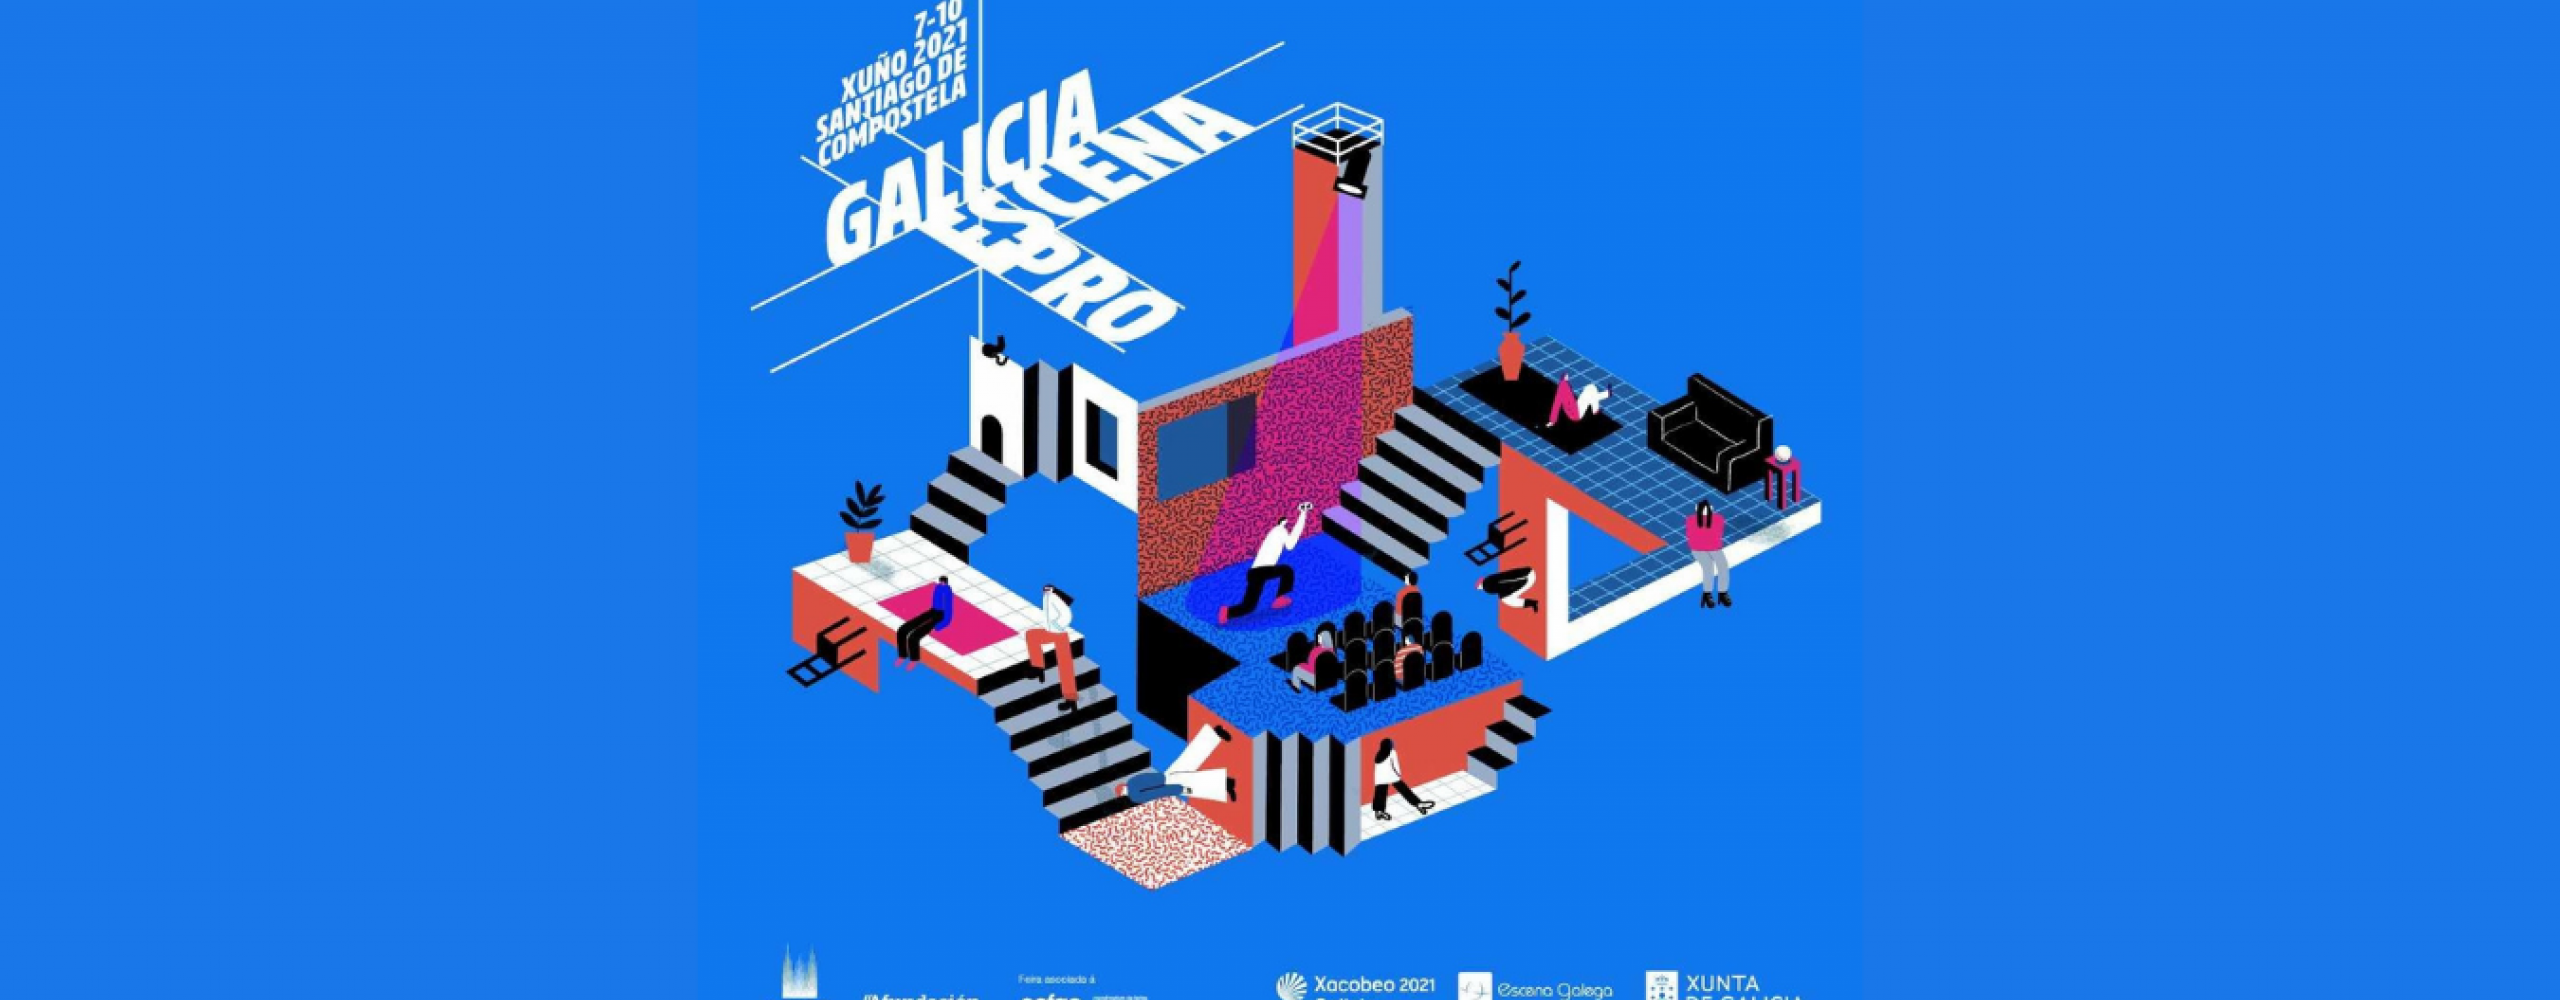 Escena Galega coorganiza xunto á Agadic a 8ª edición de Galicia Escena PRO 